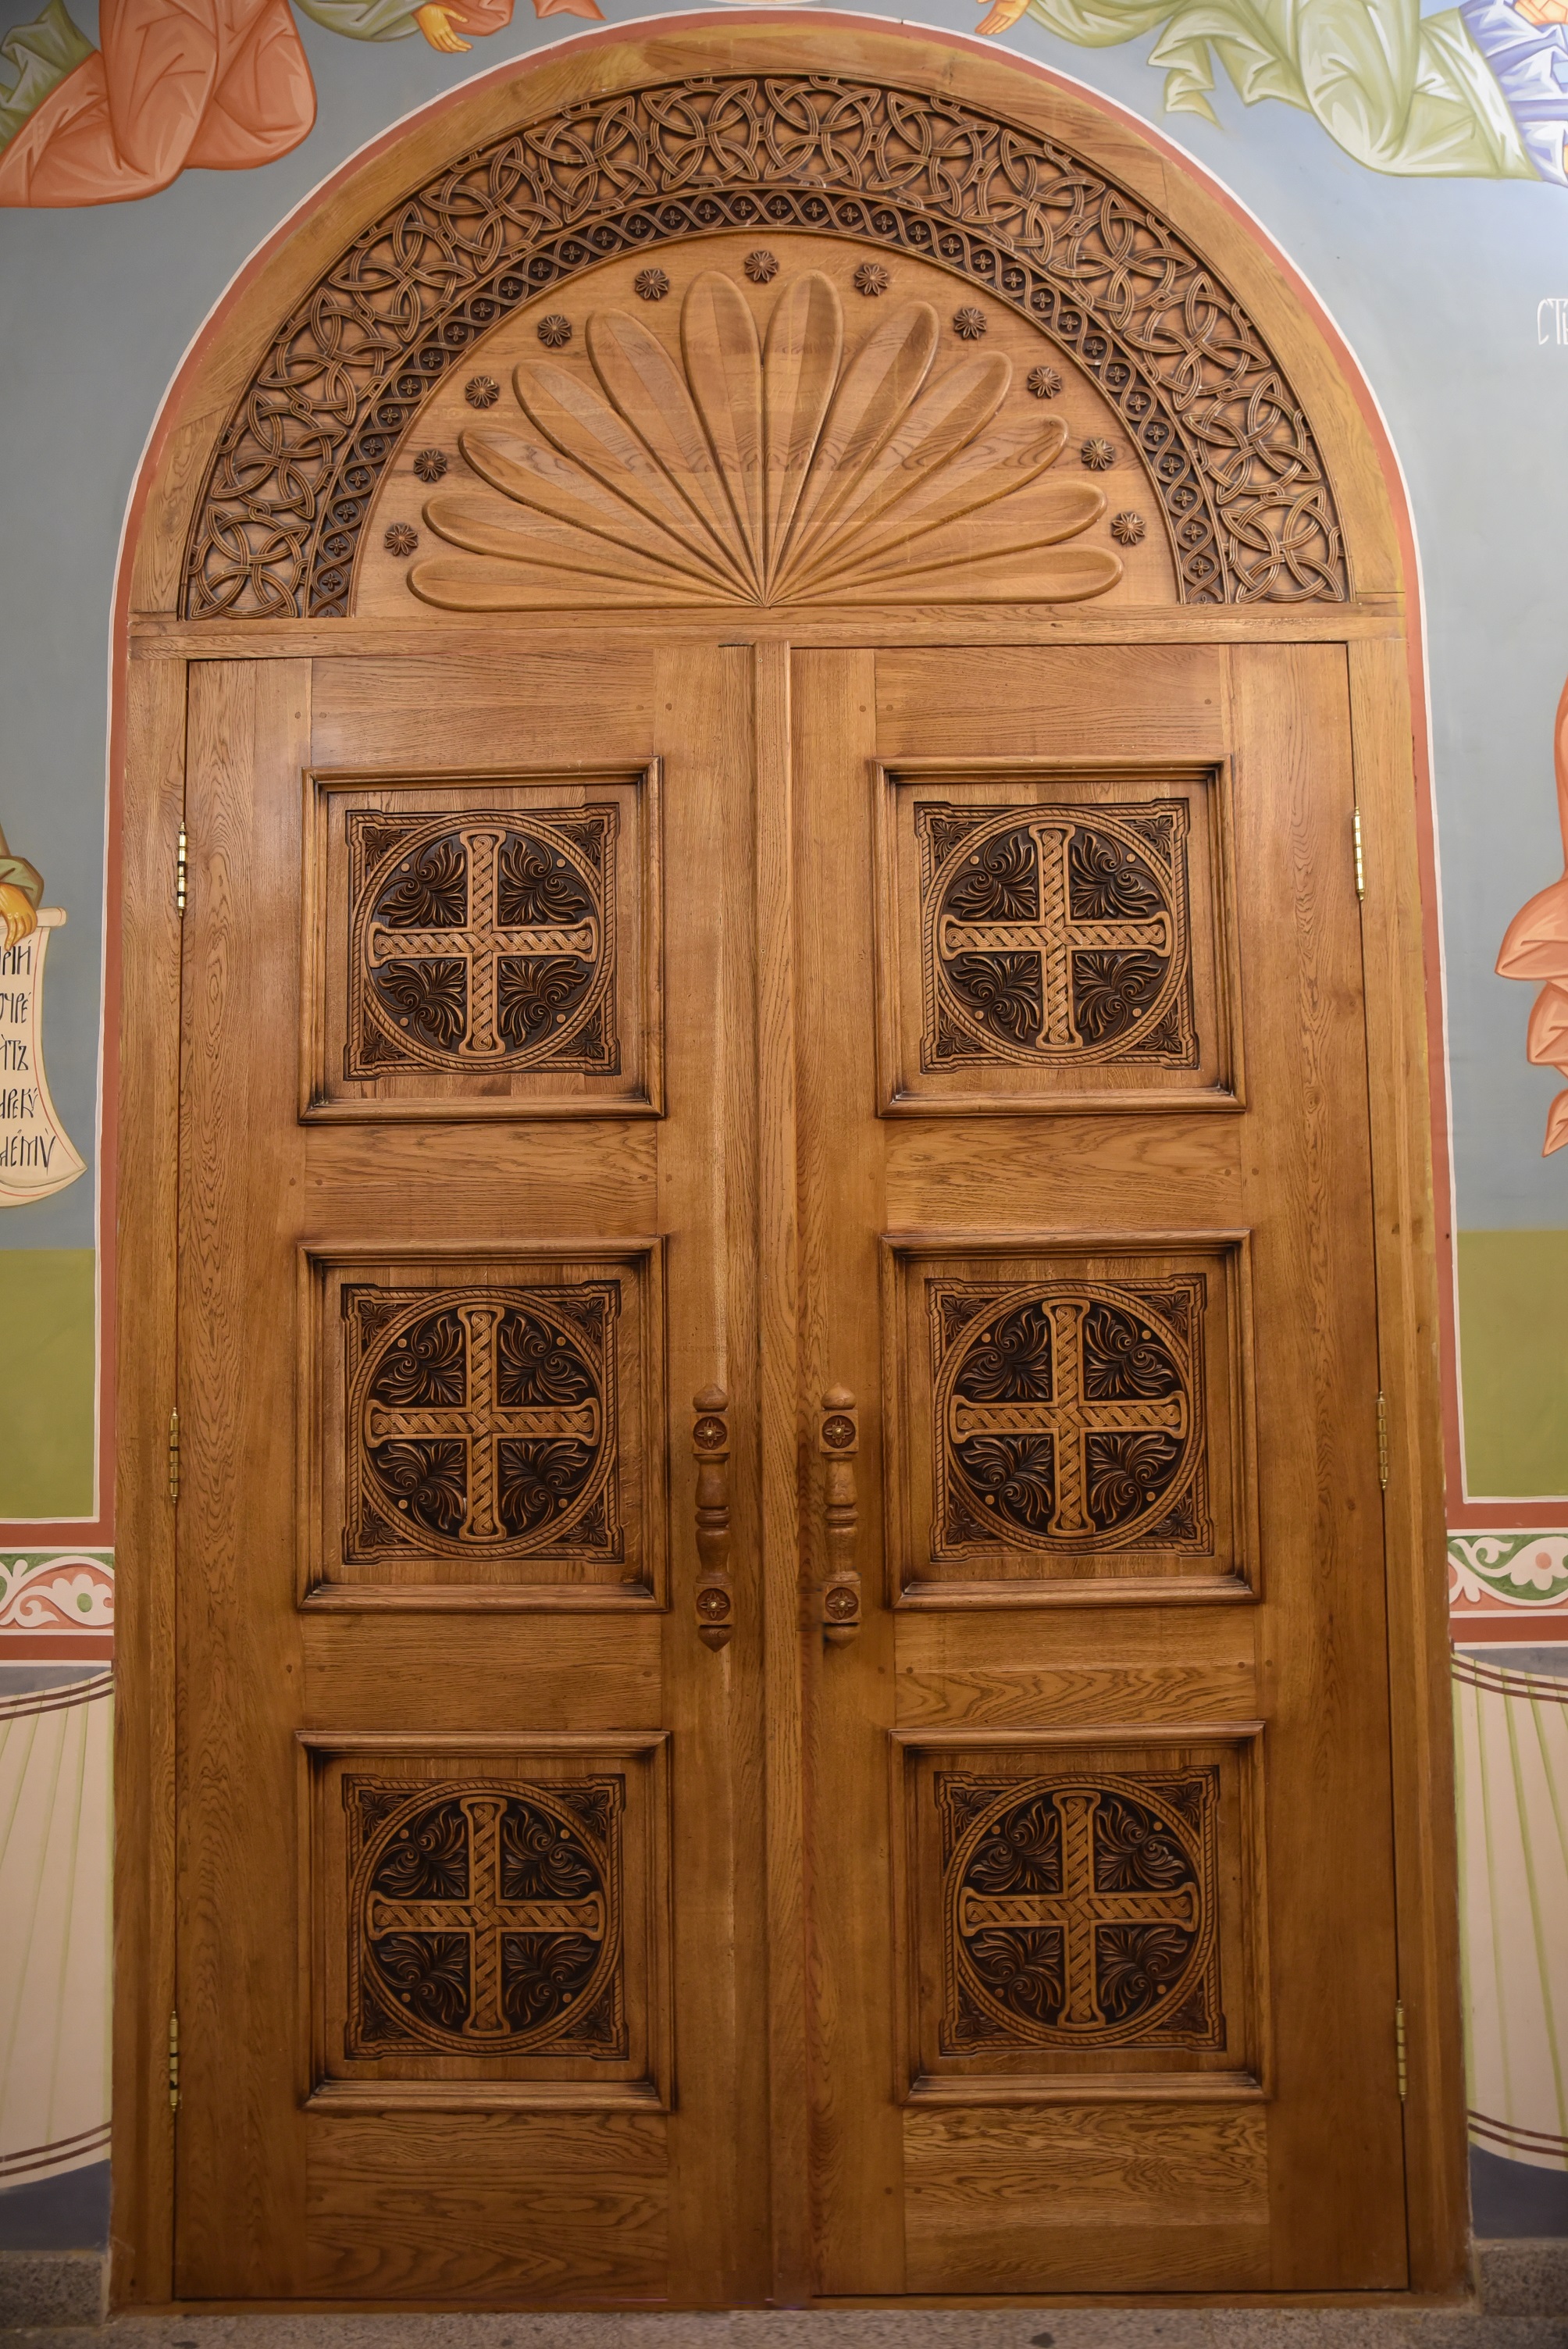 Дверь, дубовая дверь, храмовая дверь, парадная дверь, резной портал, изделия из дуба, церковная утварь, православие, христианство, убранство для храма, резьба, византийский орнамент, растительный орнамент, орнамент, 3d